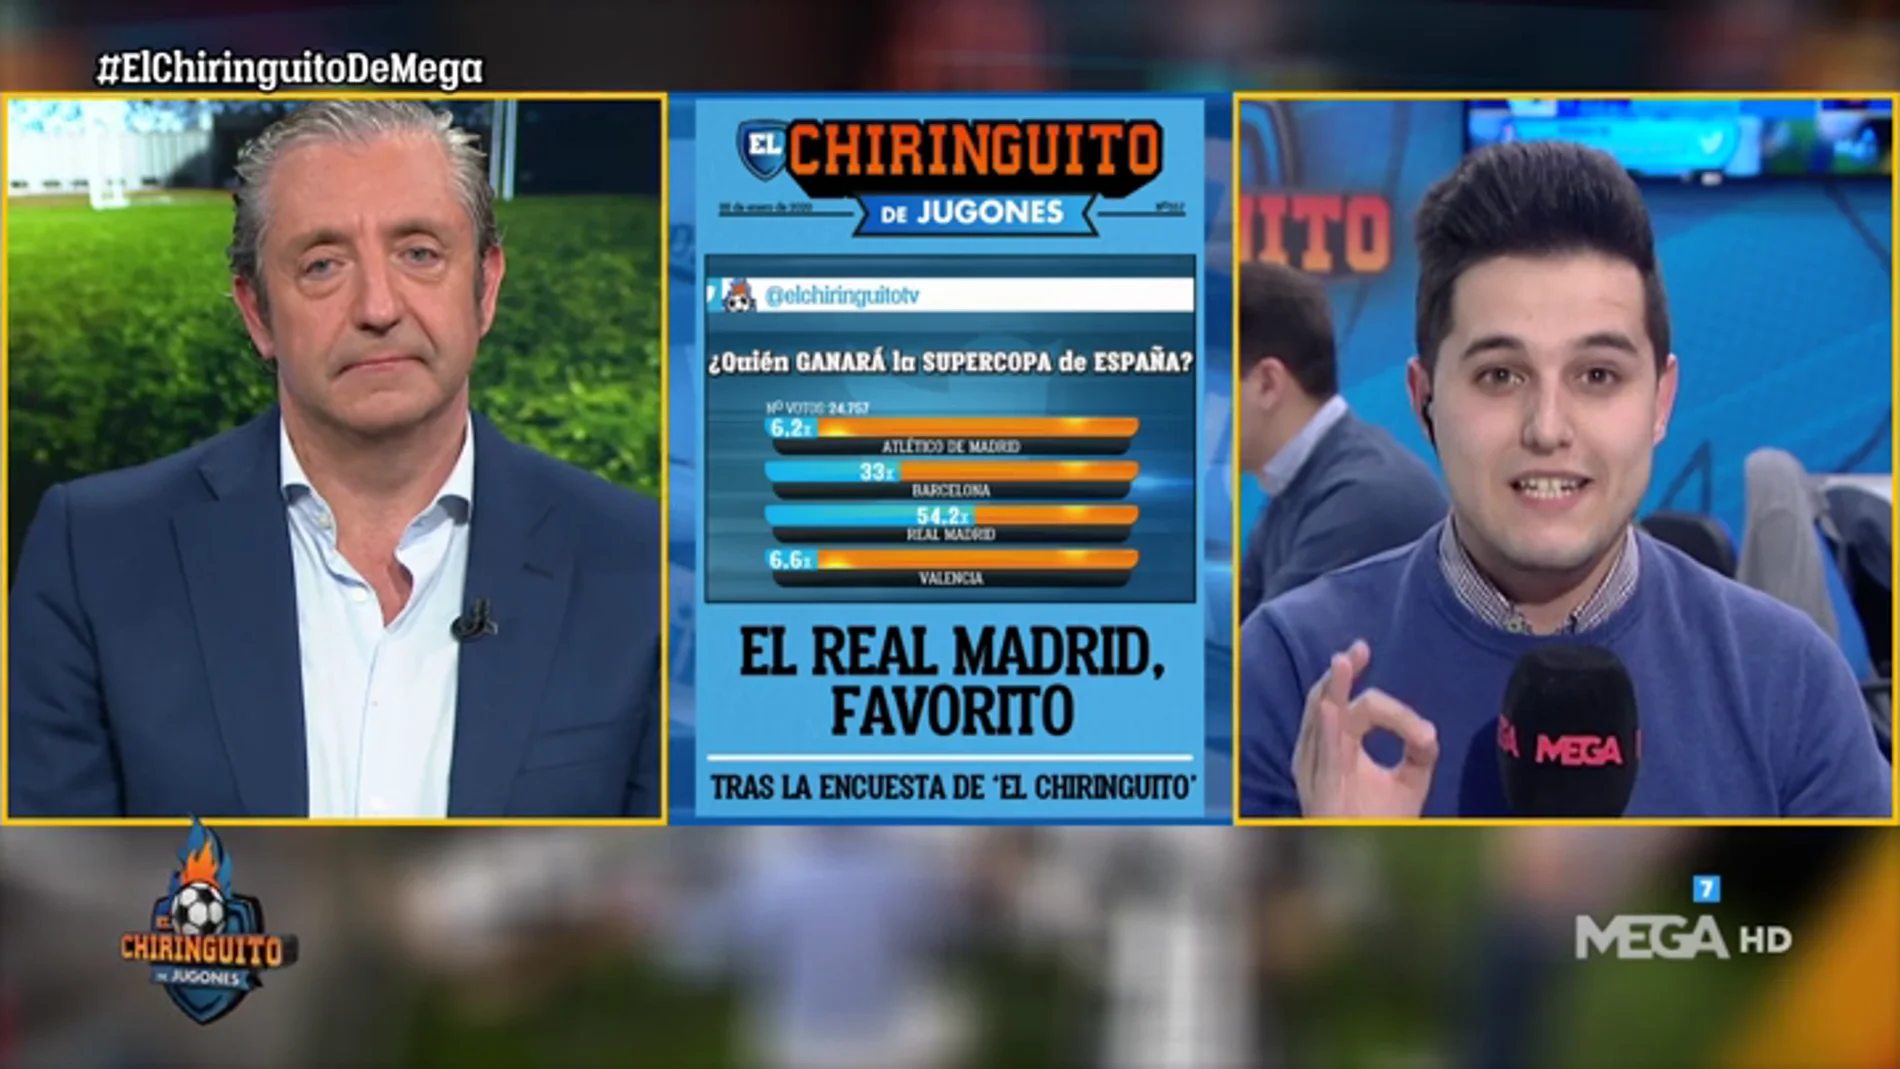 El Real Madrid, favorito para ganar la Supercopa tras la encuesta de 'El Chiringuito'